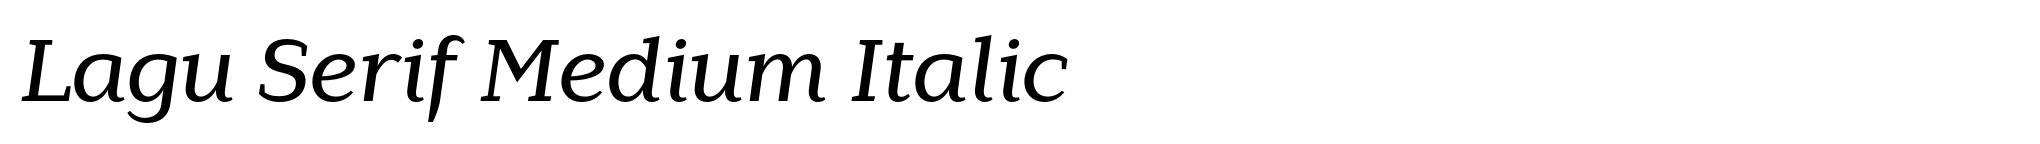 Lagu Serif Medium Italic image